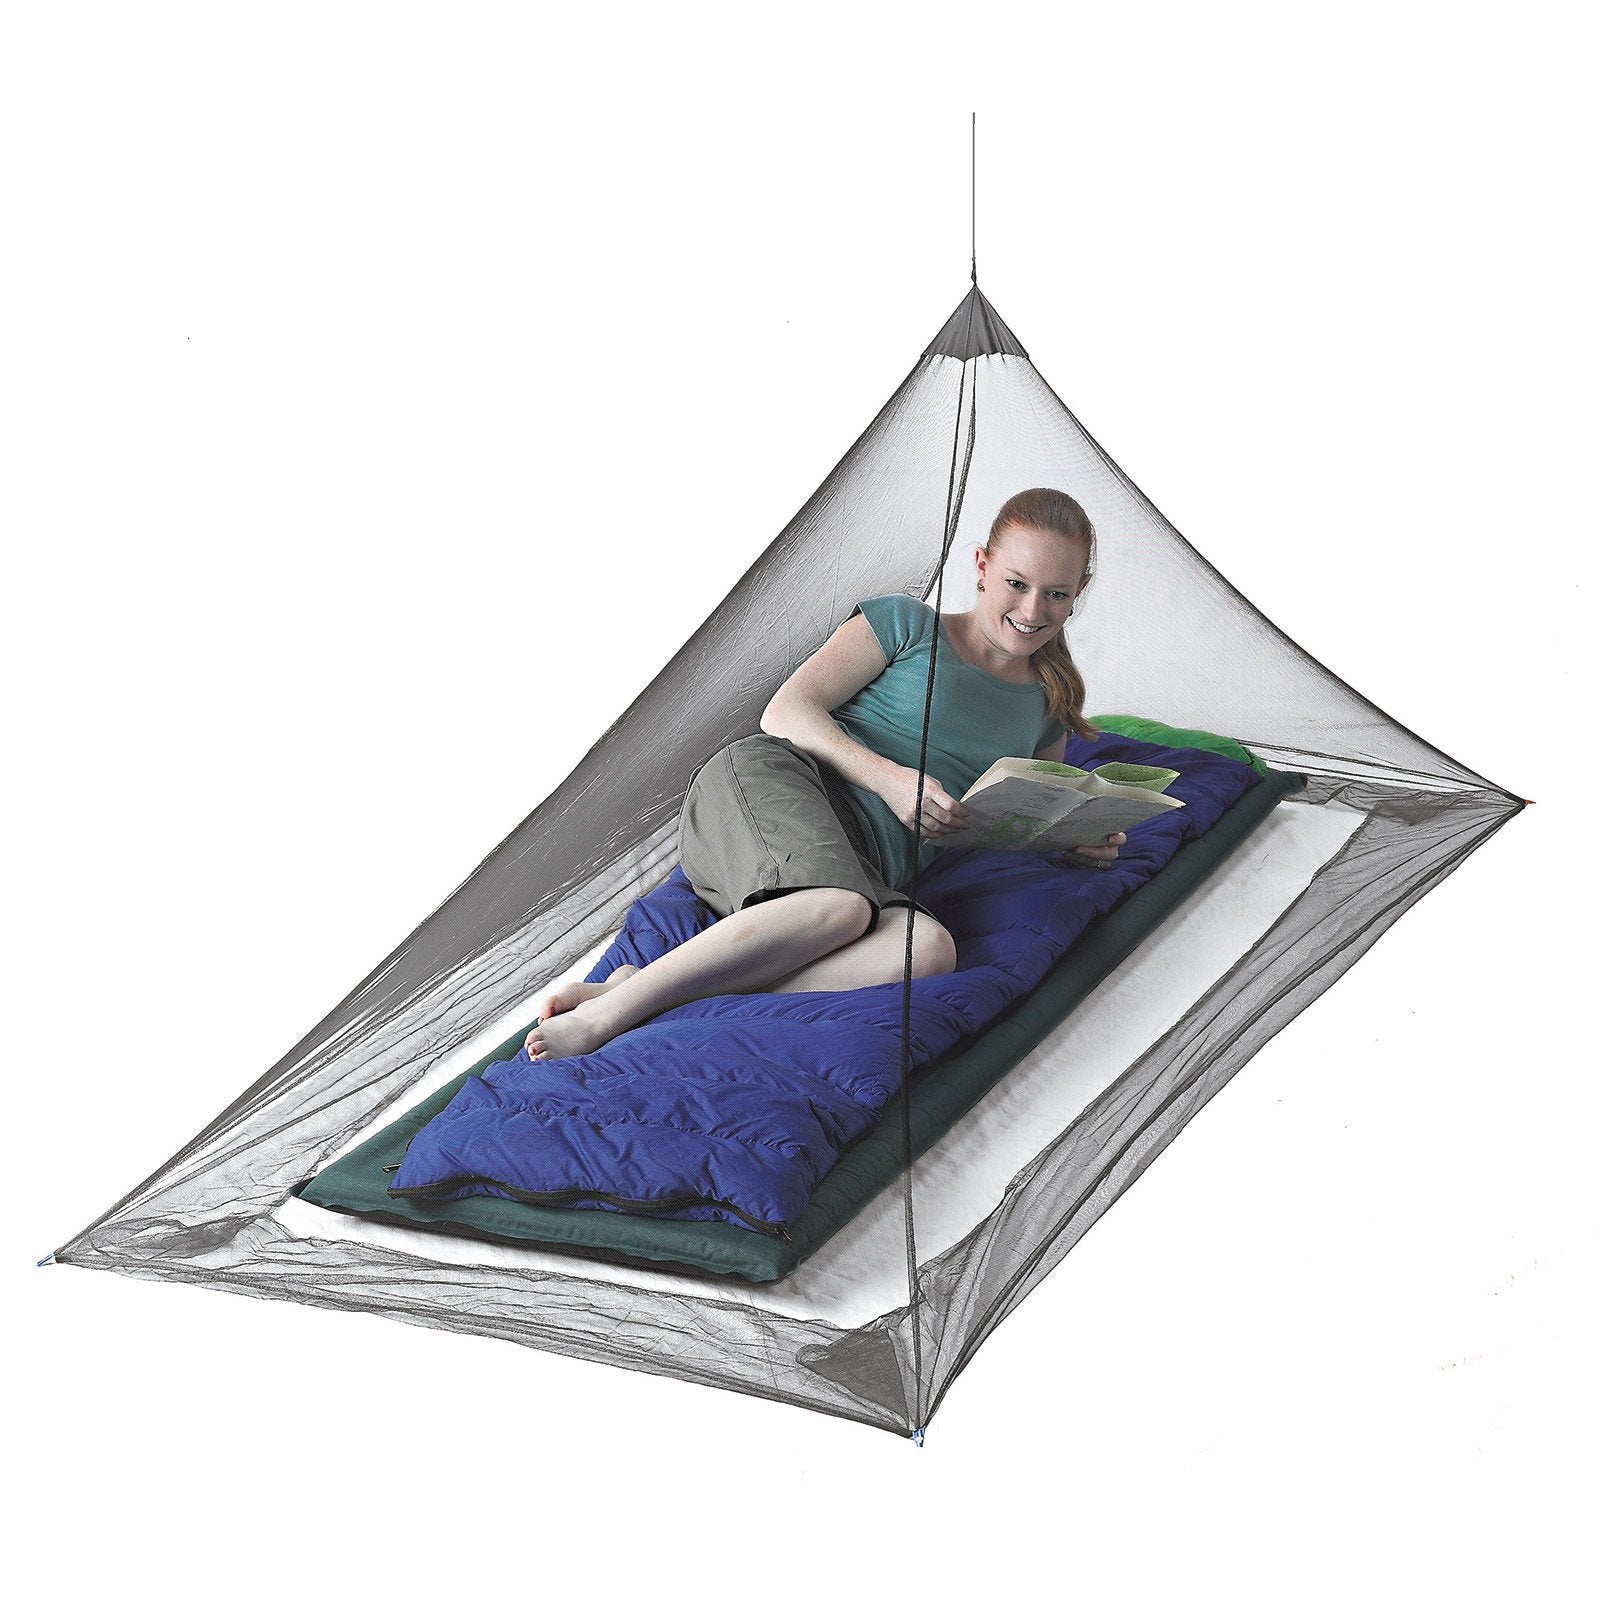 Sea to Summit Nano Mosquito Pyramid Net Single, showing lady inside on a single mattress